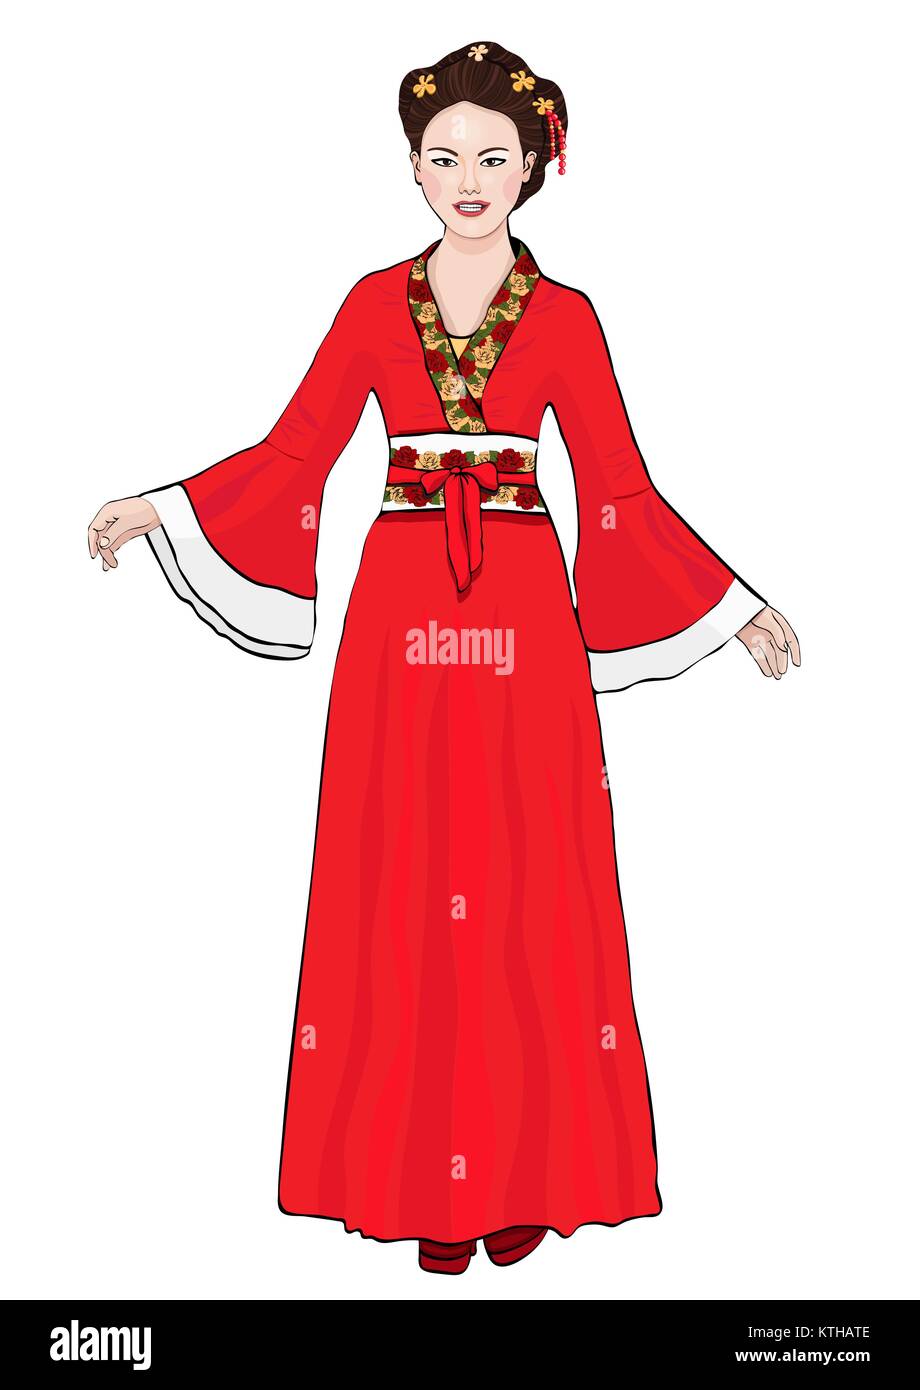 Resultado de imagen de chica con vestido de china